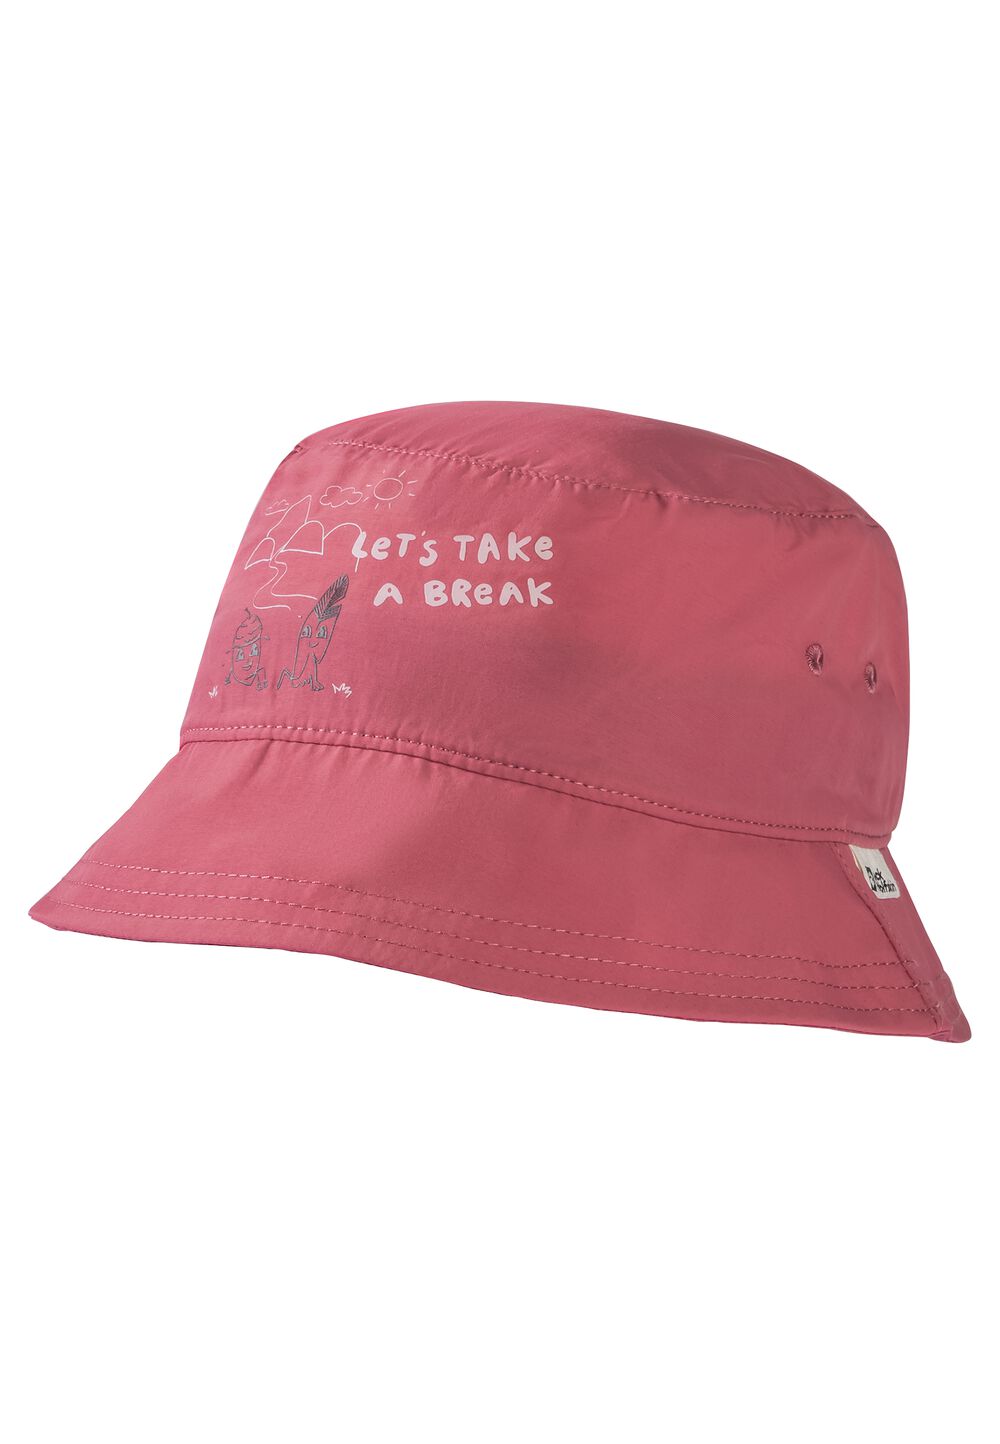 Jack Wolfskin AT Home Bucket Hat Kids Bucket hat kinderen M soft pink soft pink